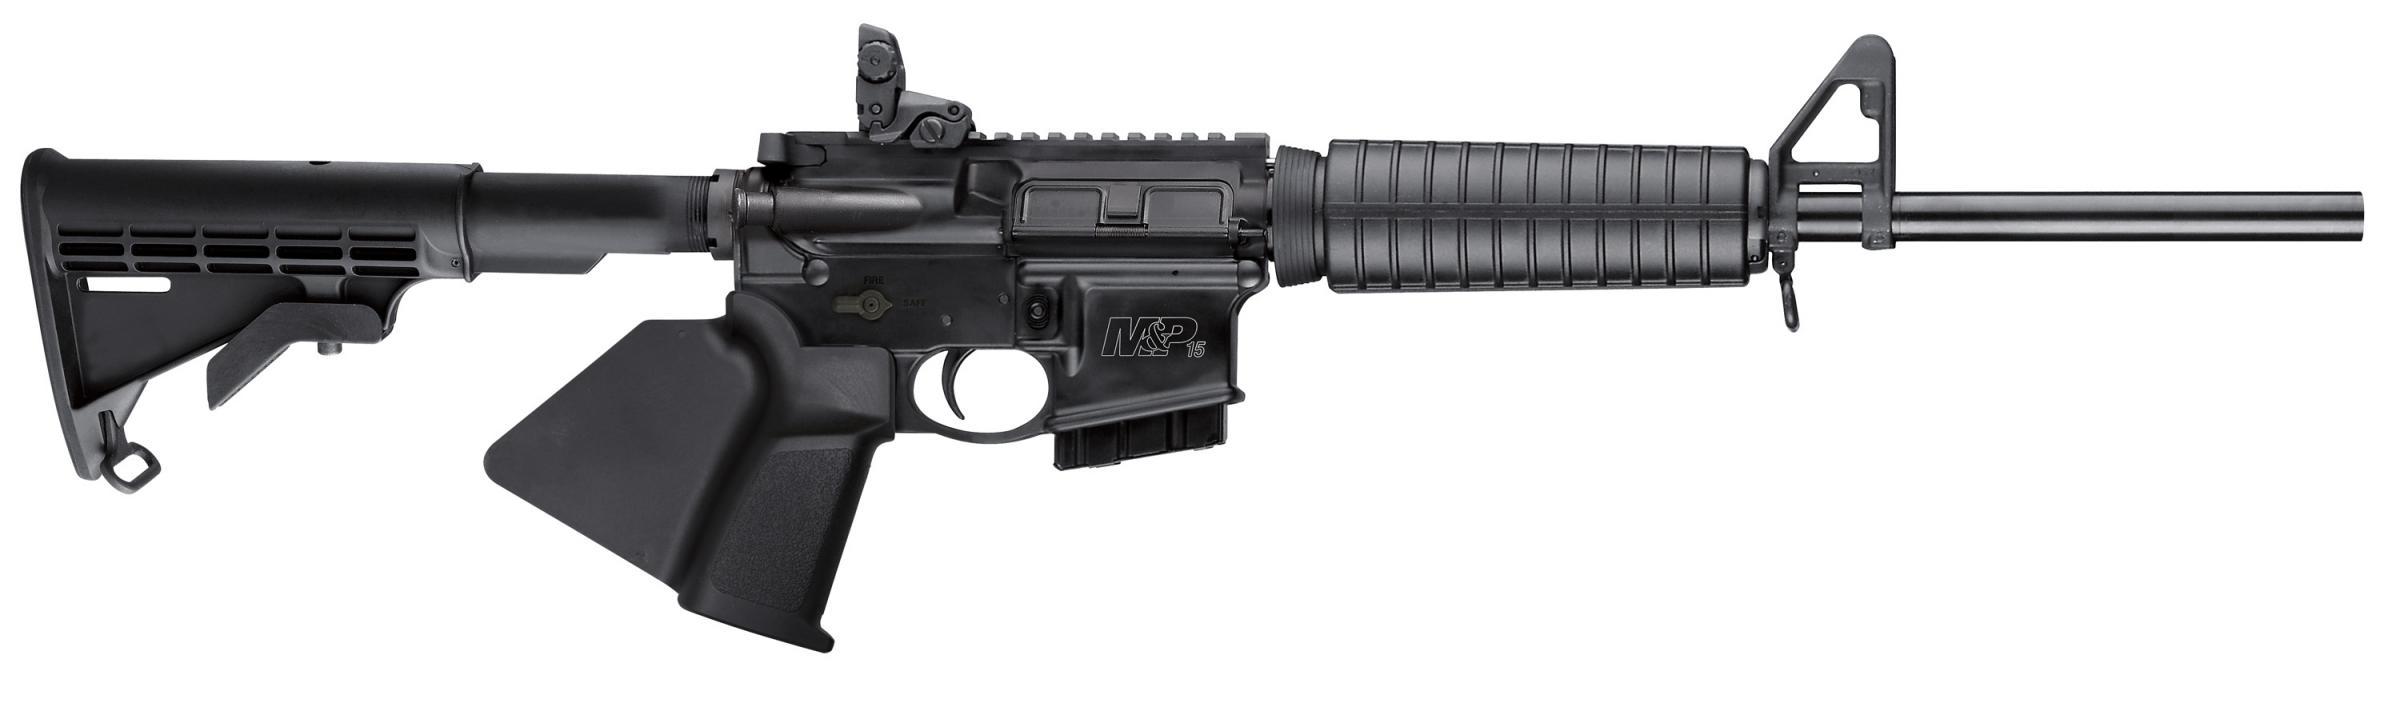 Smith & Wesson 12001 M&P15 Sport II *CA Compliant 5.56x45mm NATO 16